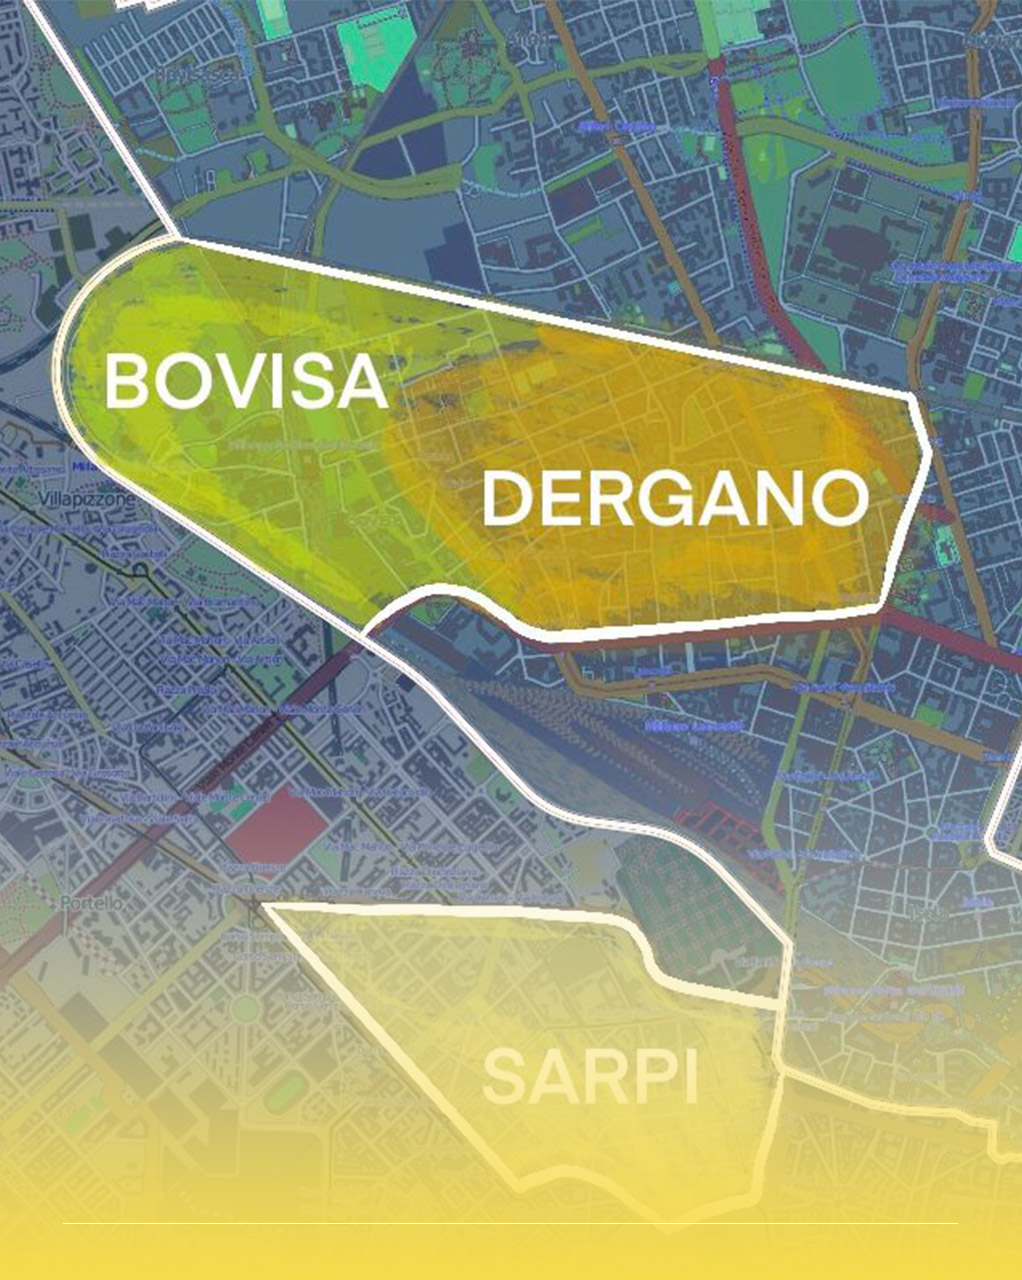 Mappa che rappresenta l'intersezione tra le zone di Bovisa, Dergano, Sarpi